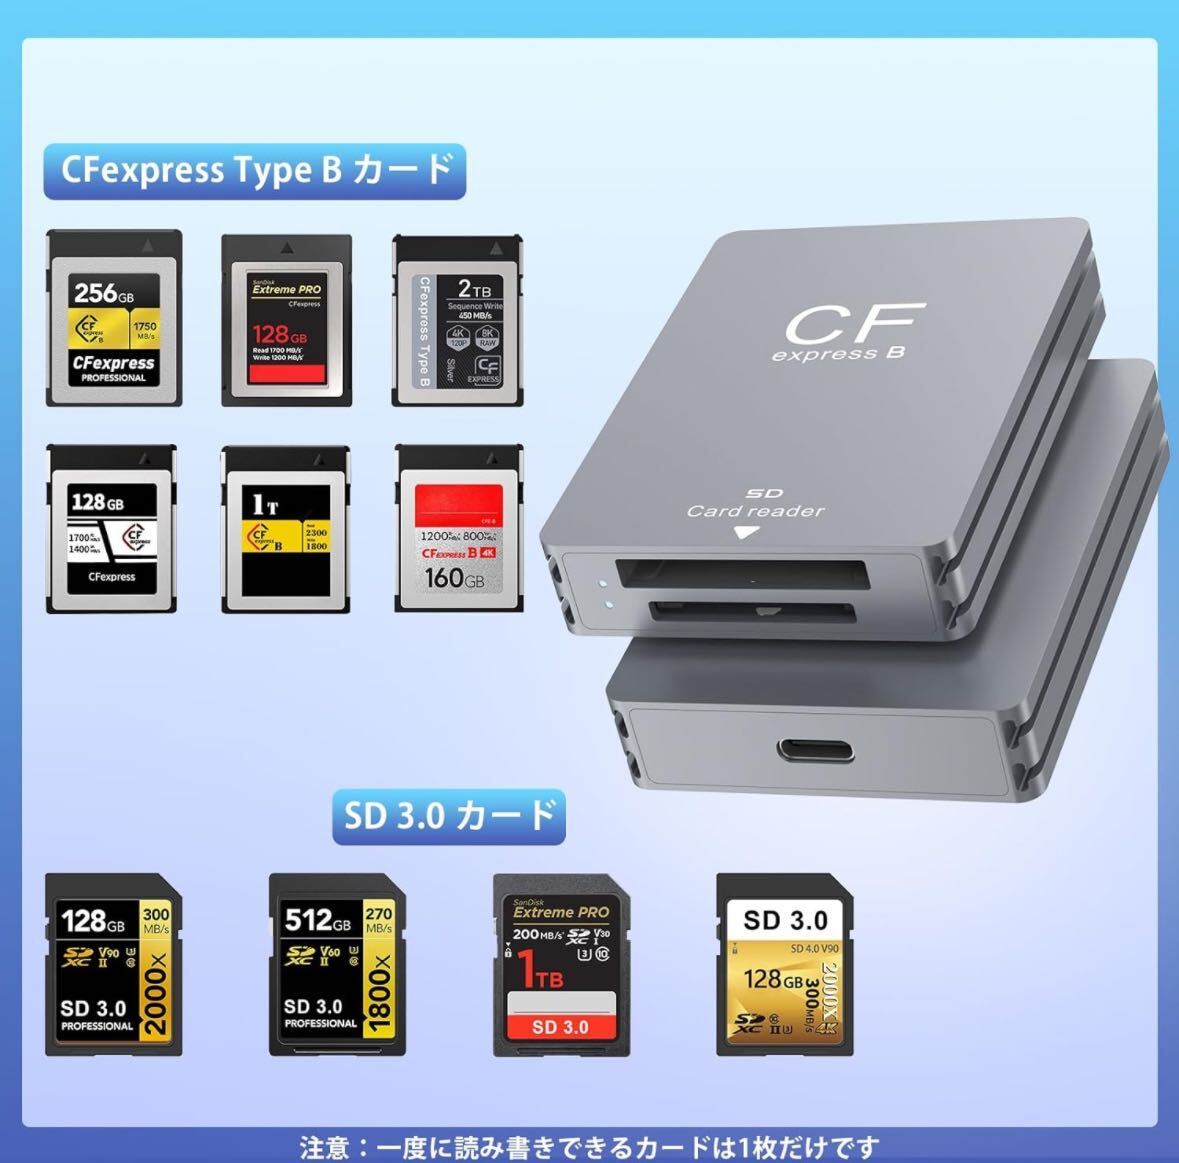 CFexpress Type B/SD カードリーダー USB3.2 ダブルスロットカードリーダー10Gbps高速転CFexpress専用カードリーダー アルミ合金 高耐久 